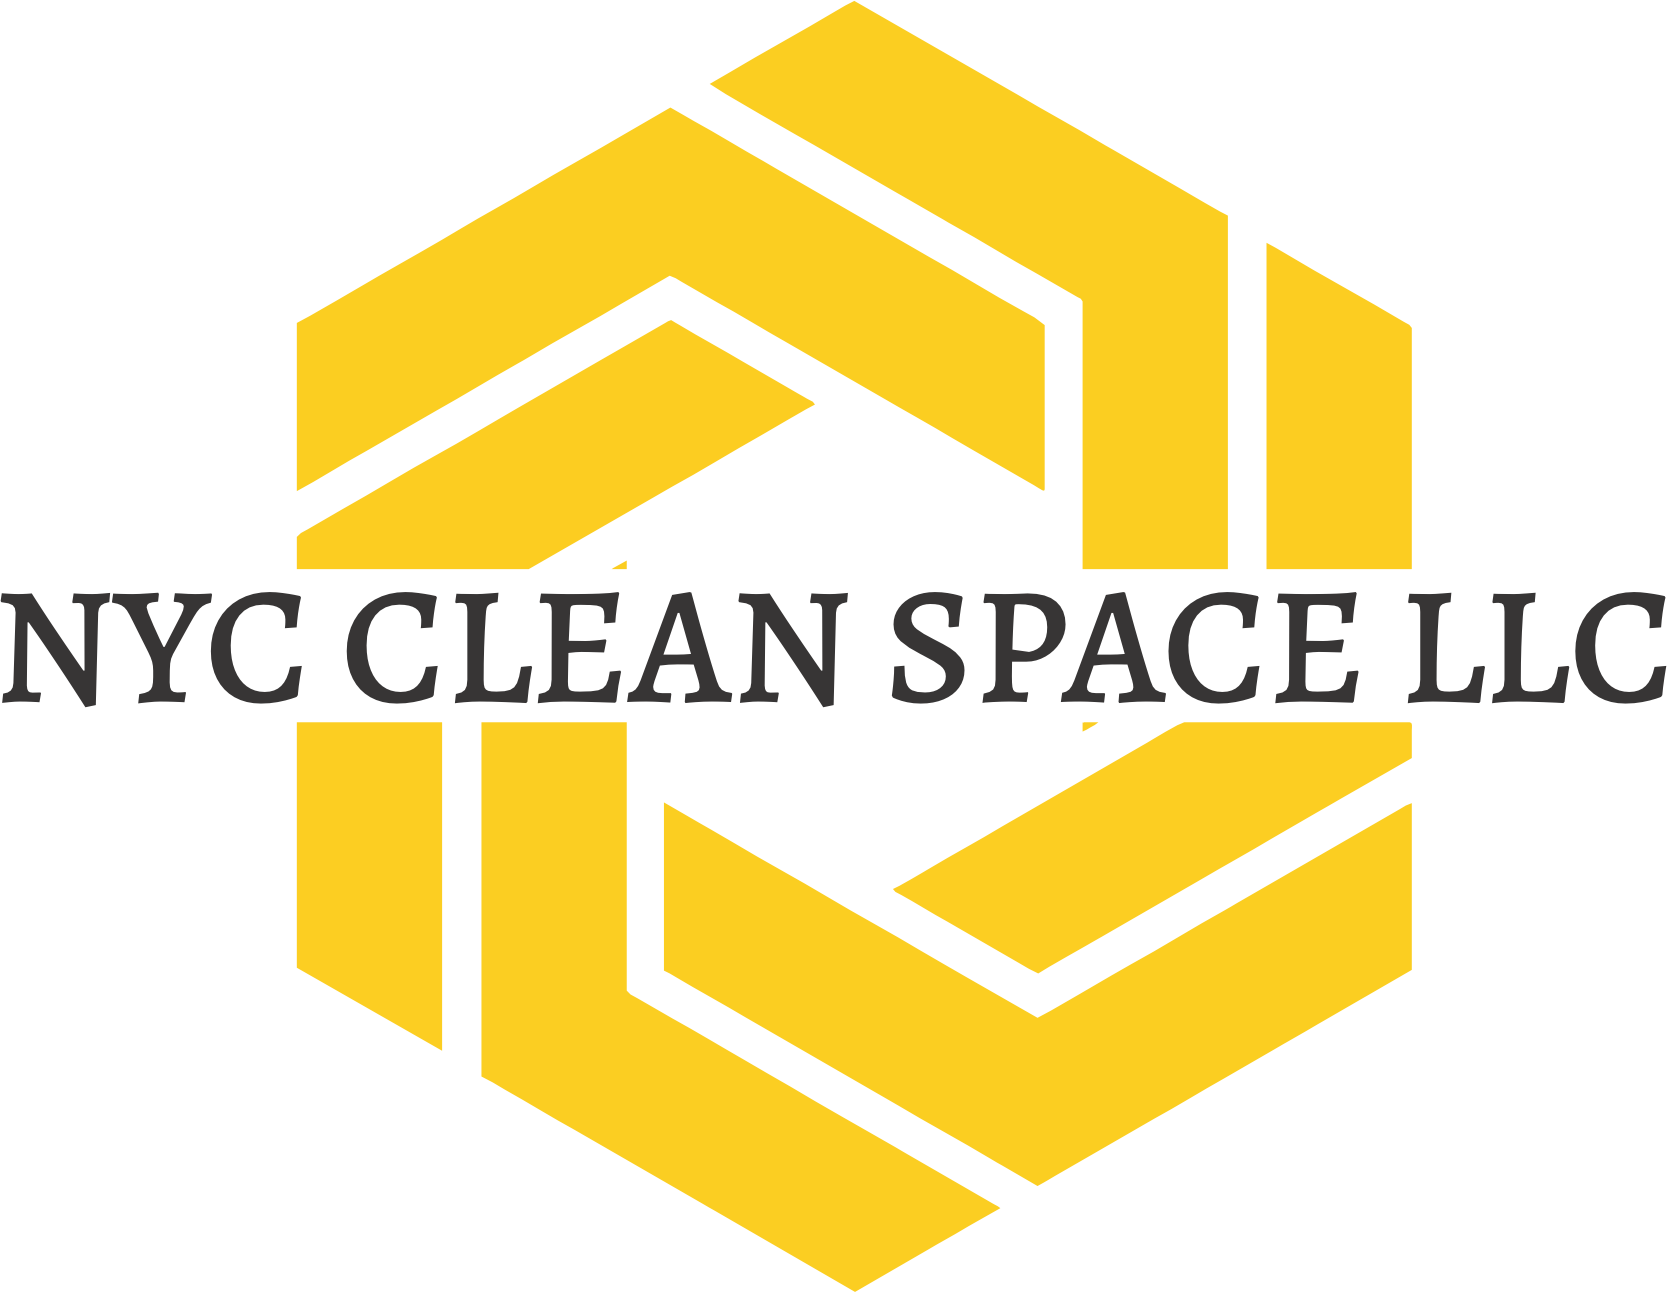 NYC Clean Spaces LLC